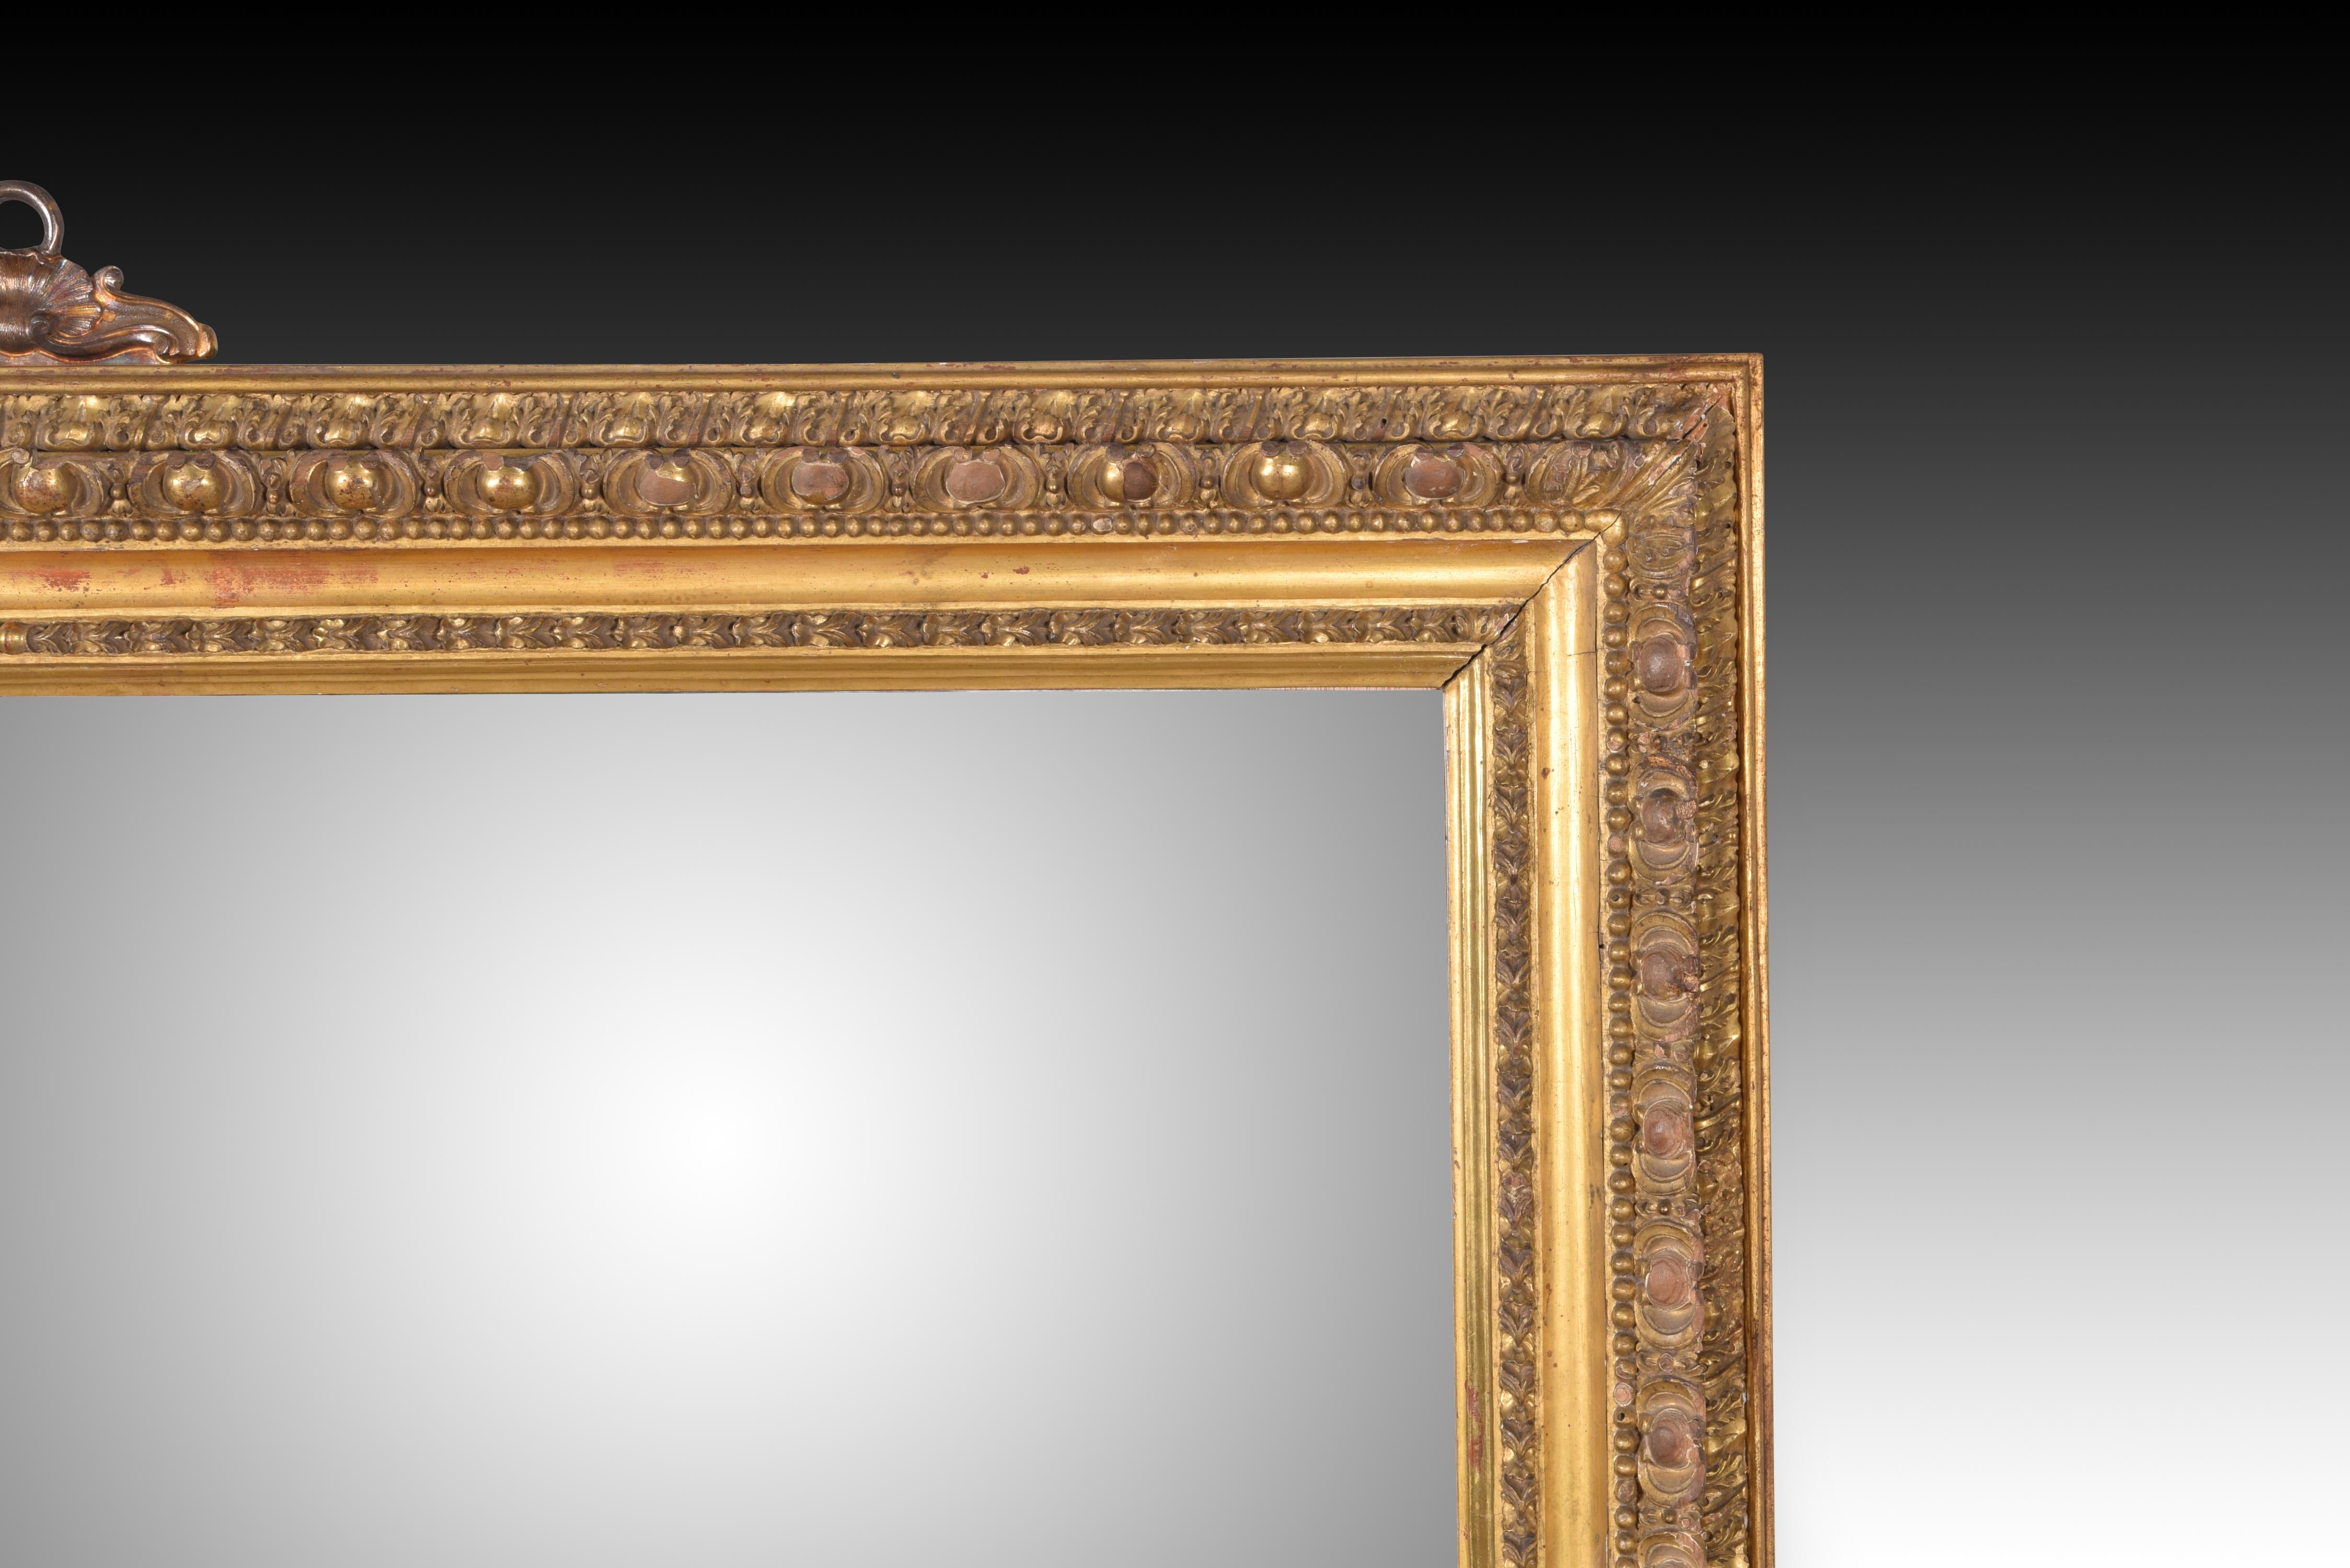 Spiegel. Geschnitztes Holz. 20. Jahrhundert, nach Modellen aus dem 19. Jahrhundert. 
Wandspiegel mit dekorativen Elementen innerhalb und außerhalb der Glasfläche, abgeschlossen mit einem Umhang. All diese dekorativen Details sowie die Form sind von